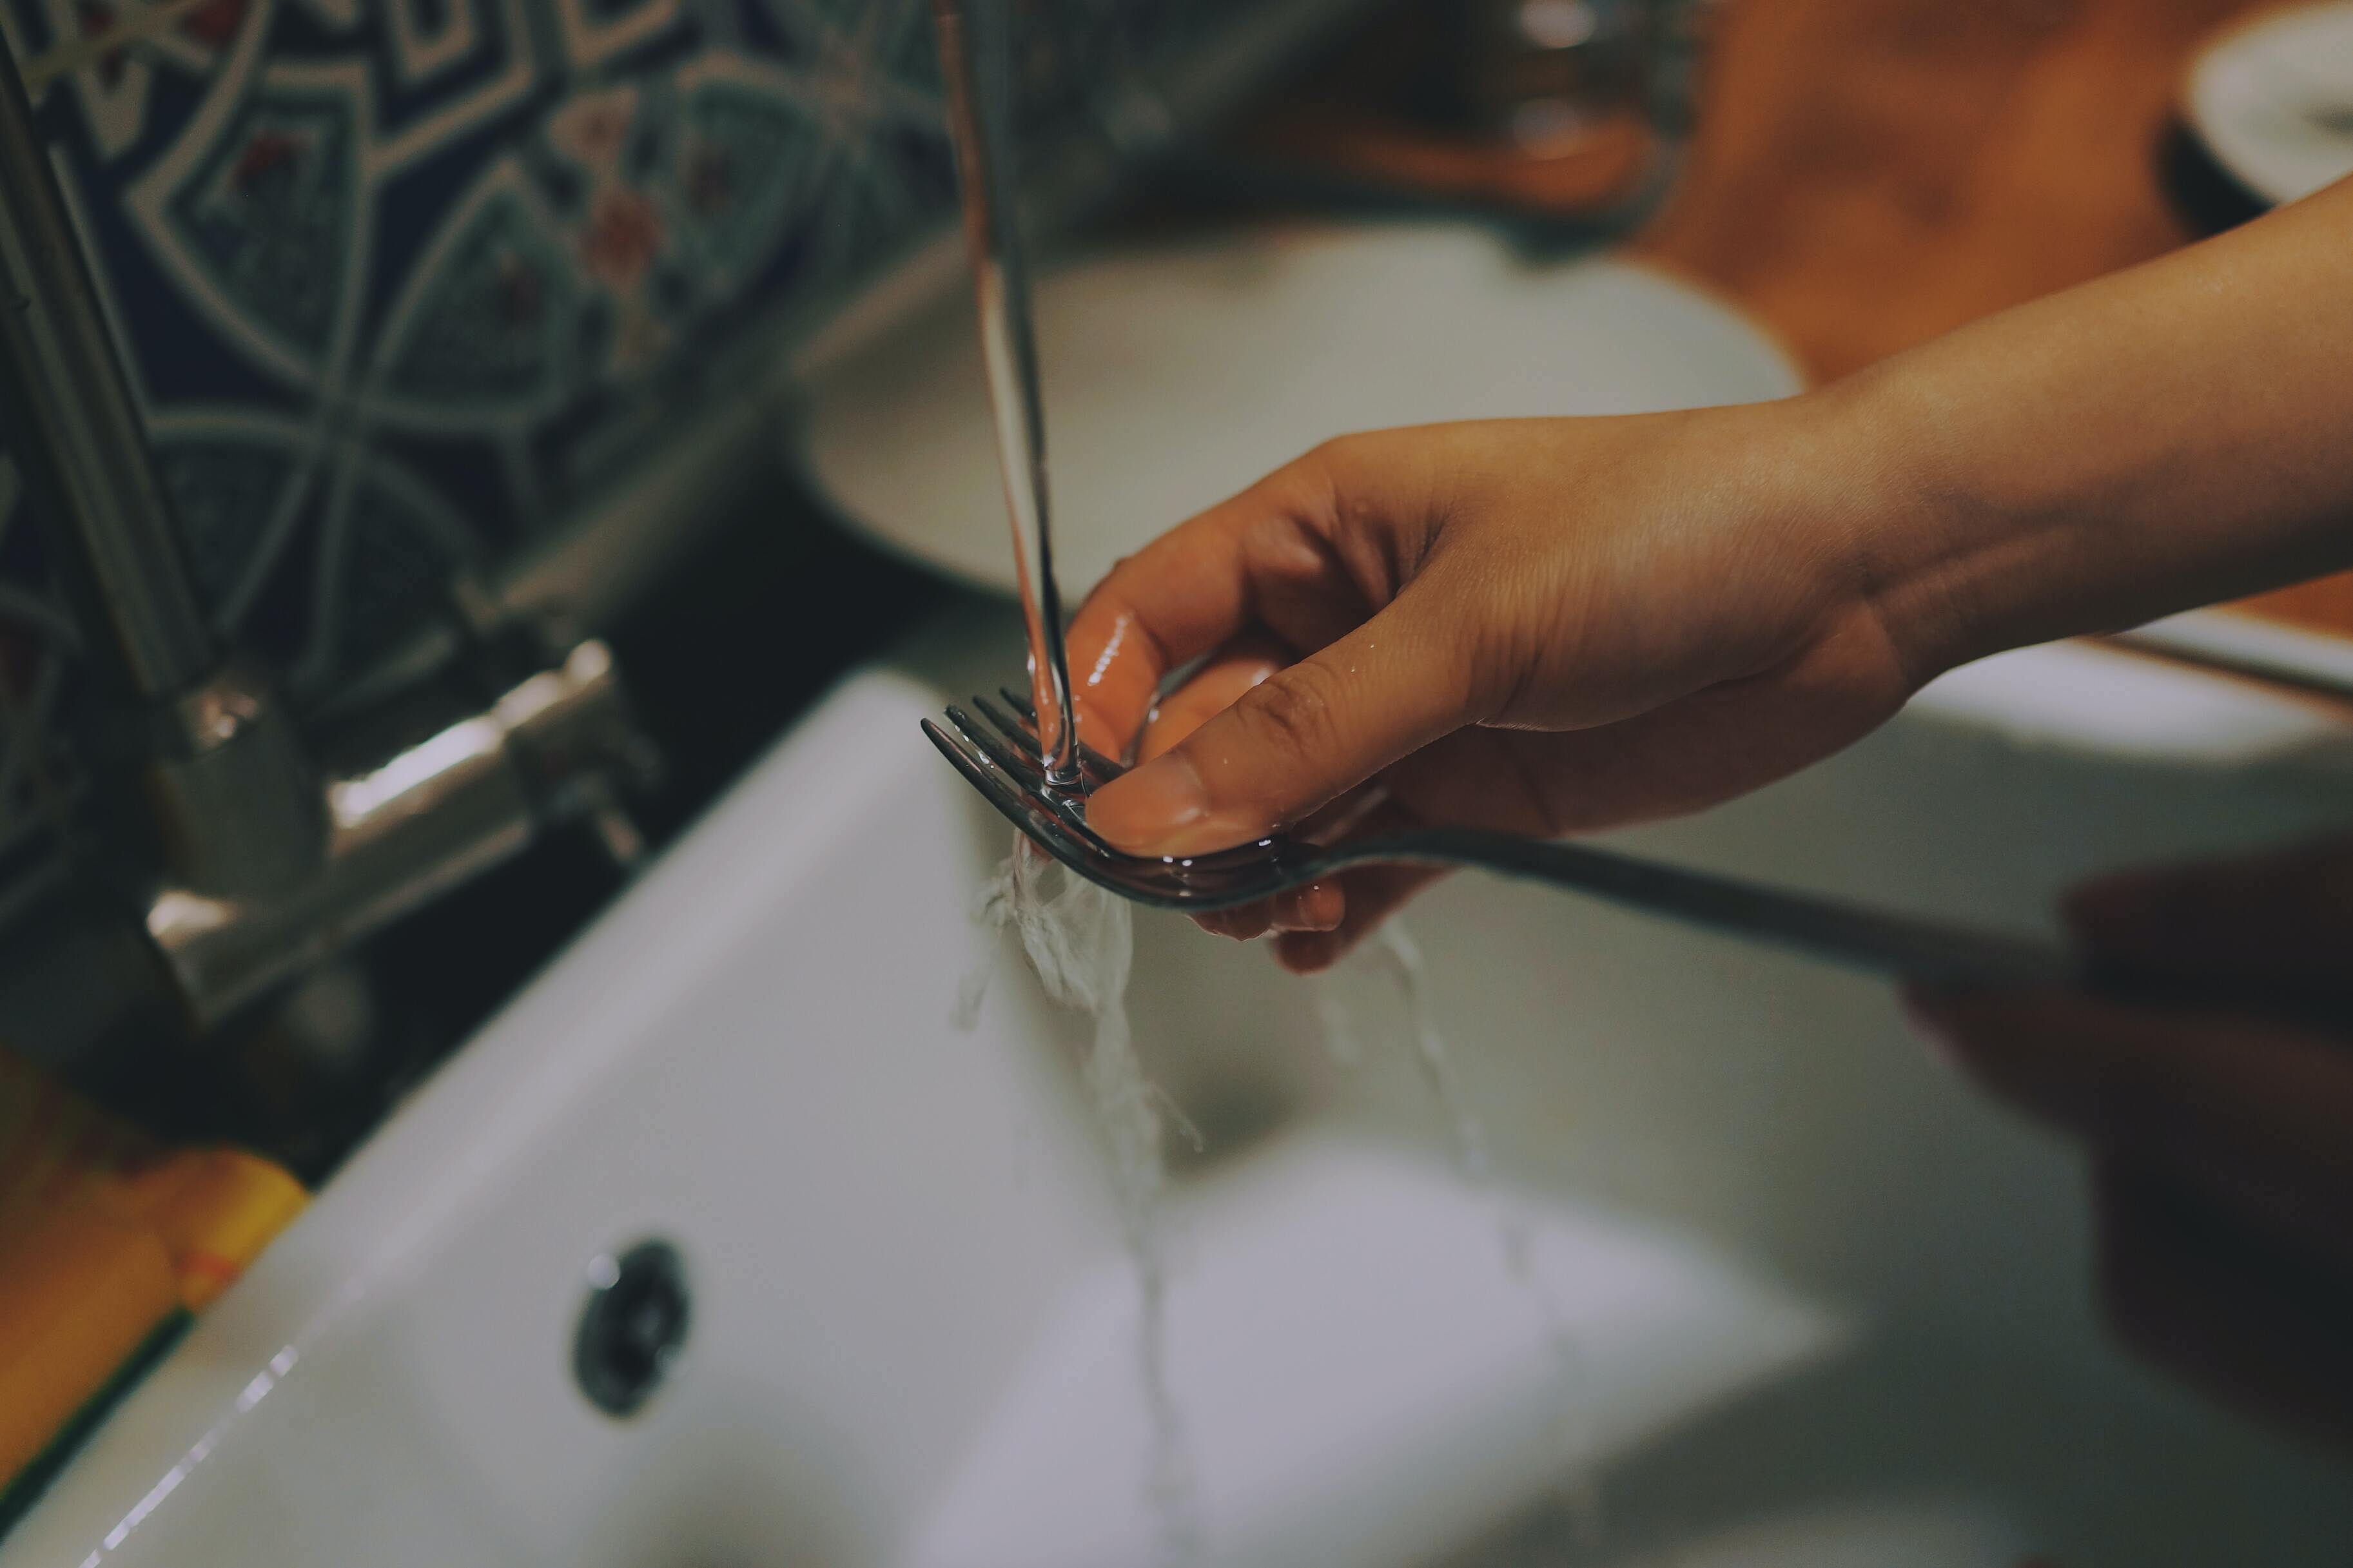 Дешёвое средство для мытья посуды может спровоцировать рак